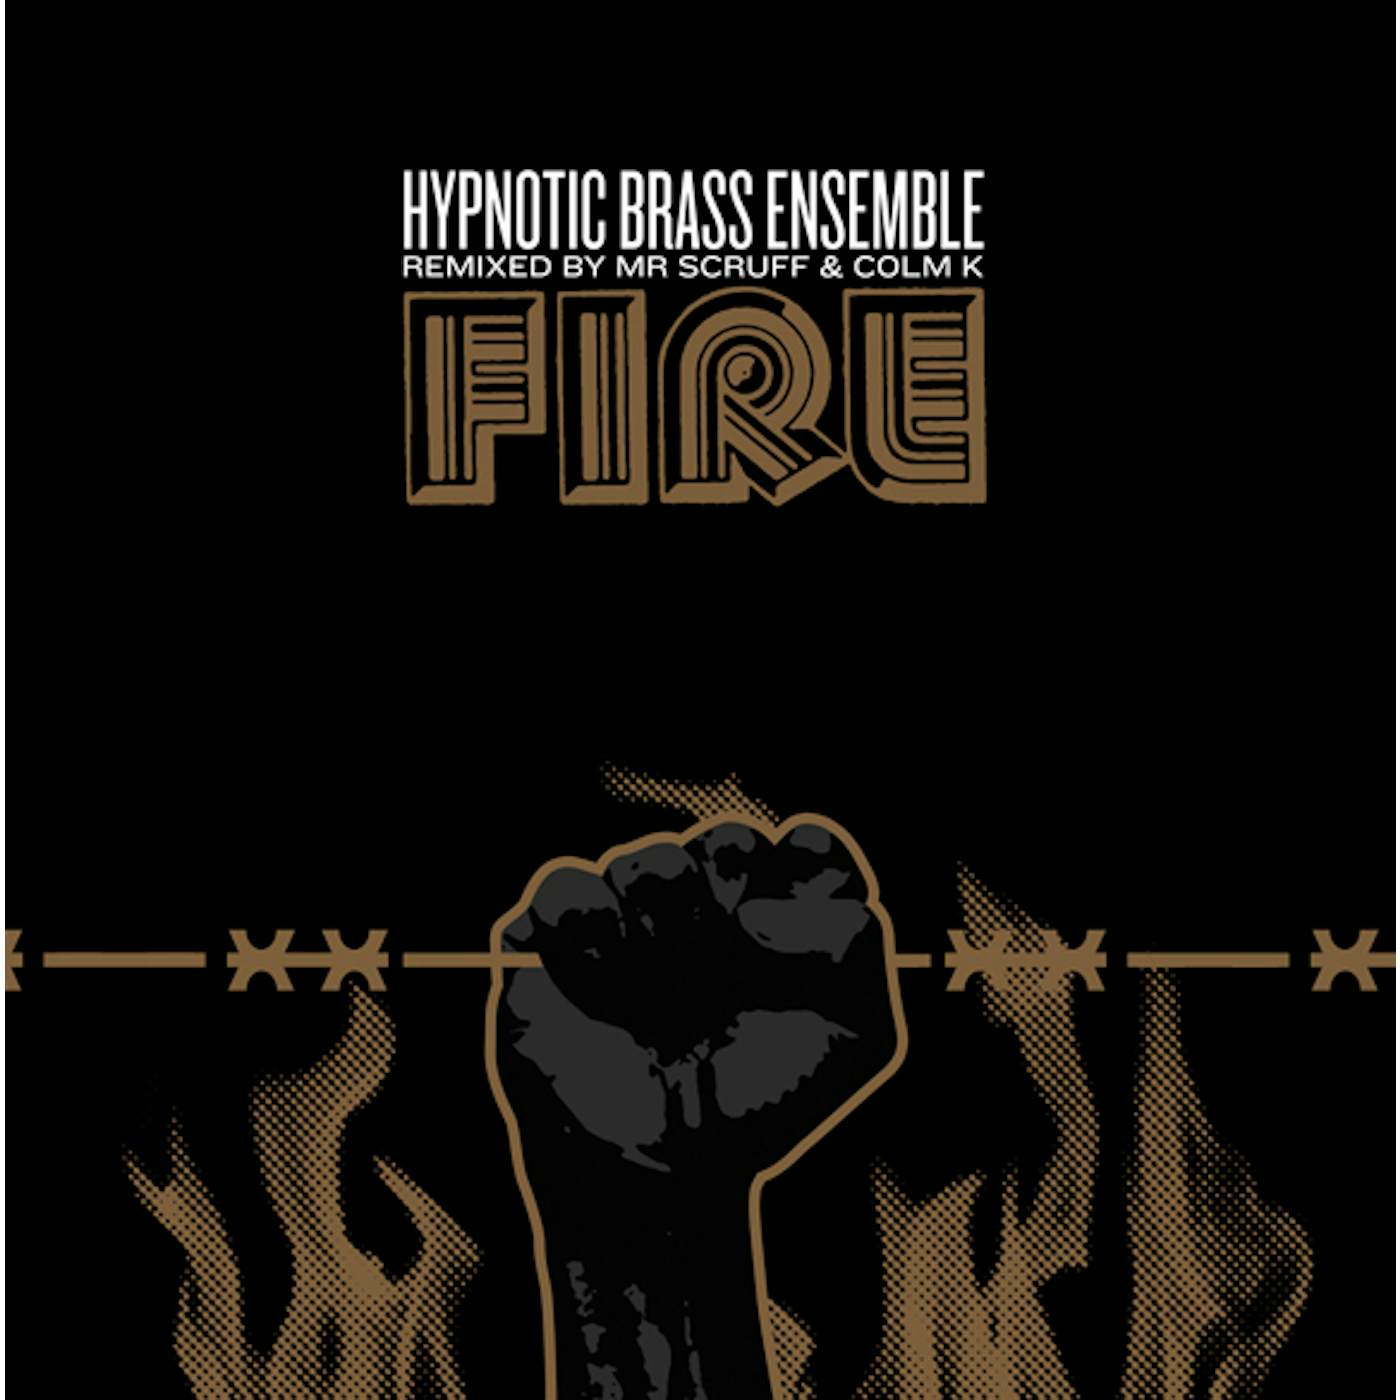 Hypnotic Brass Ensemble FIRE Vinyl Record